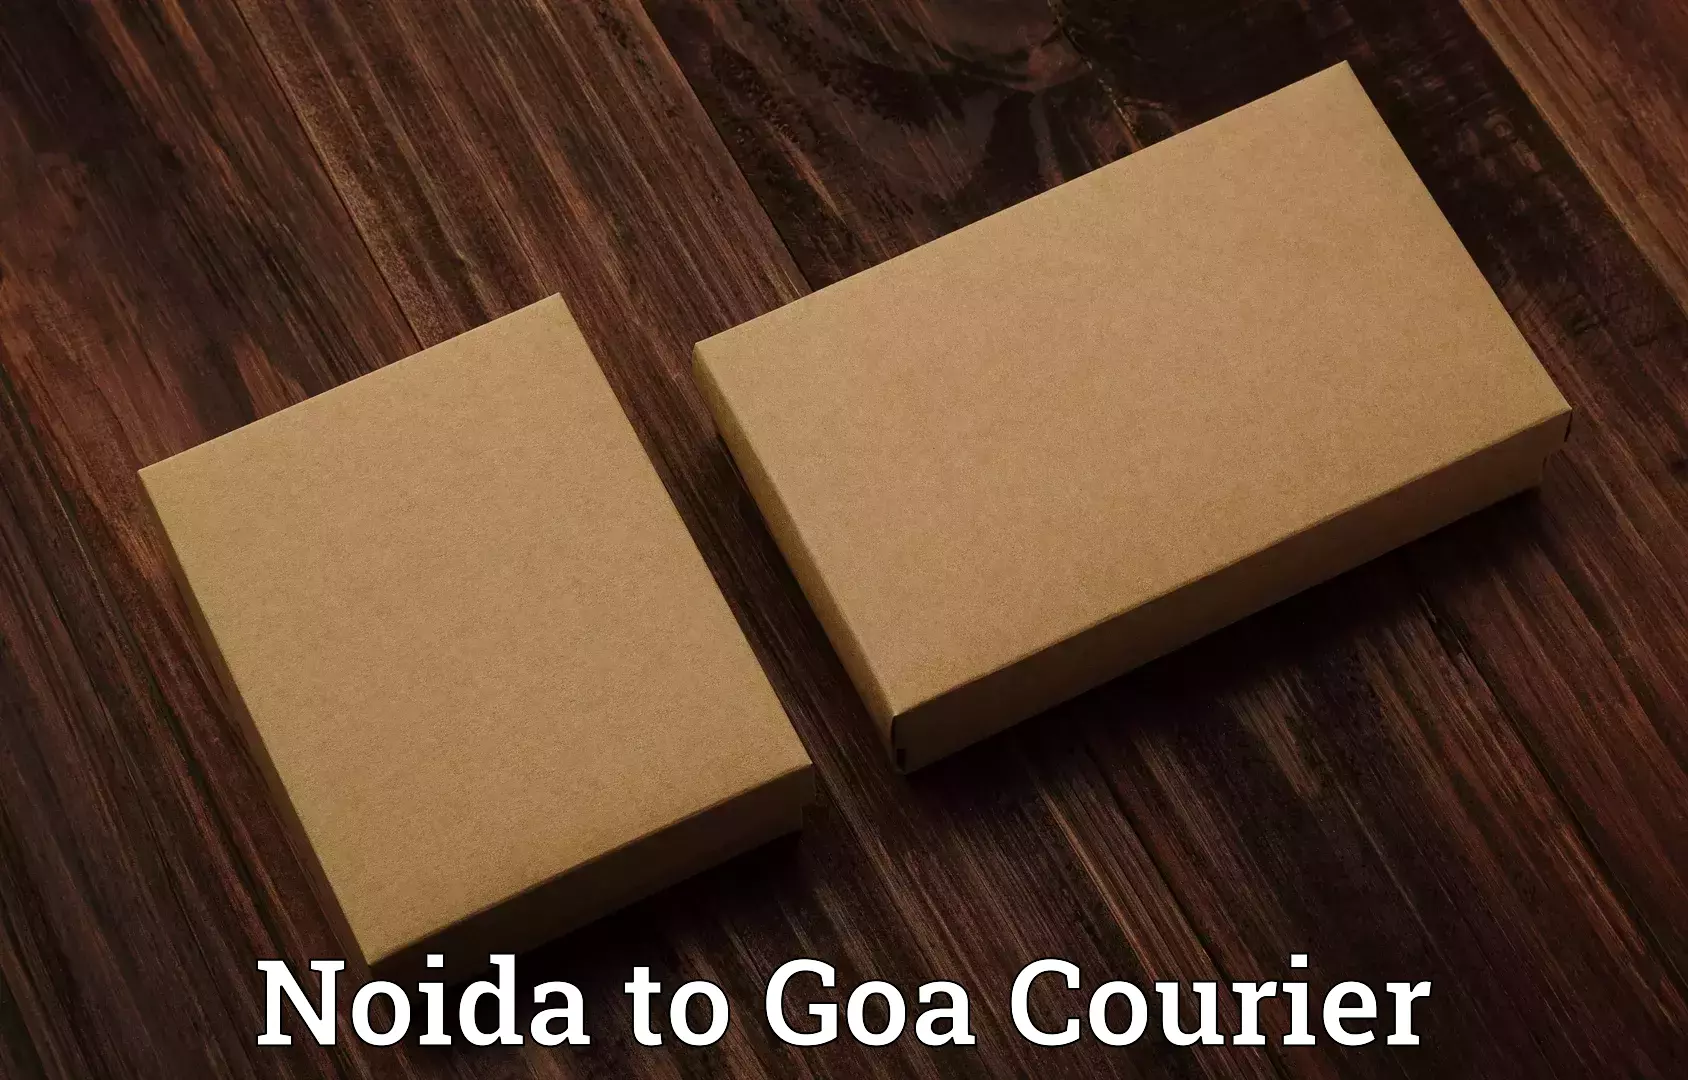 Luggage transport company Noida to IIT Goa